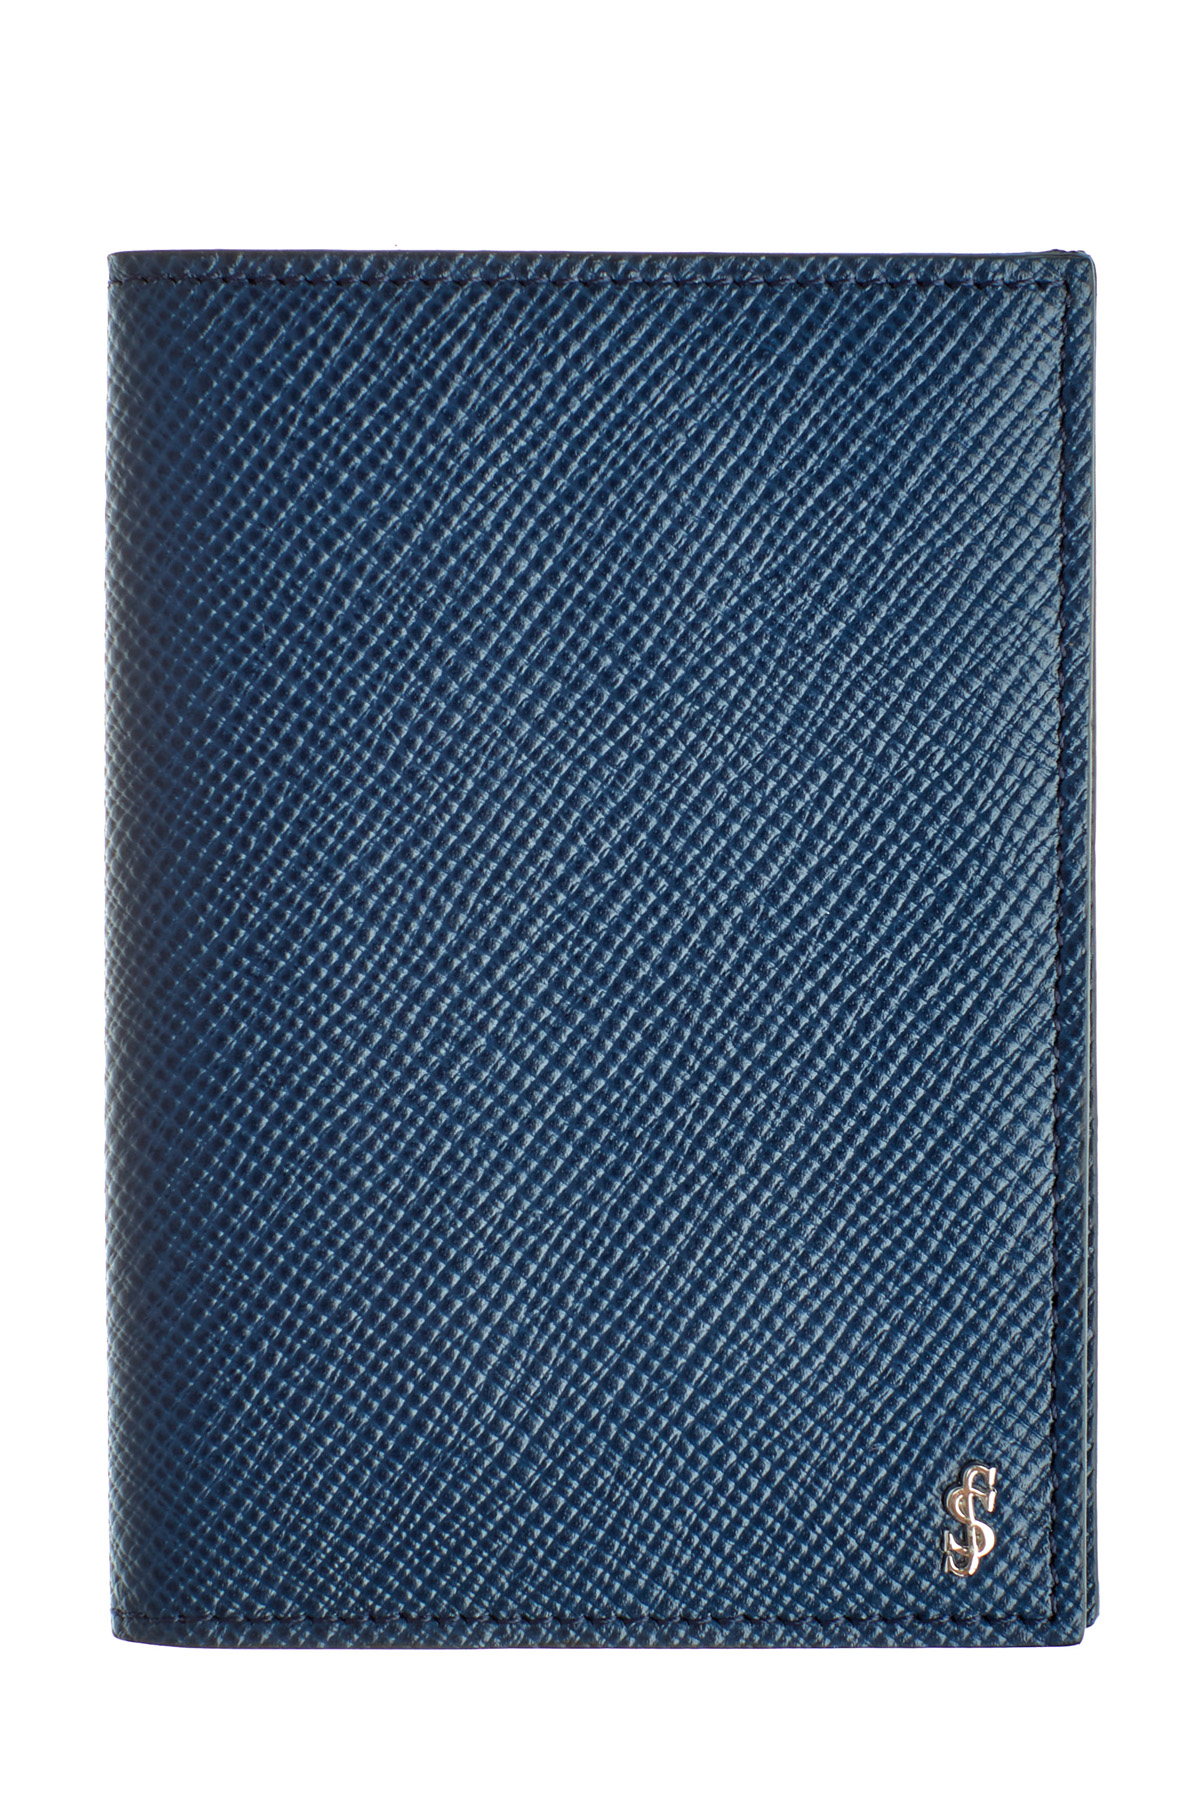 Визитница из сафьяновой кожи с тисненым логотипом бренда SERAPIAN, цвет голубой, размер 44 - фото 1